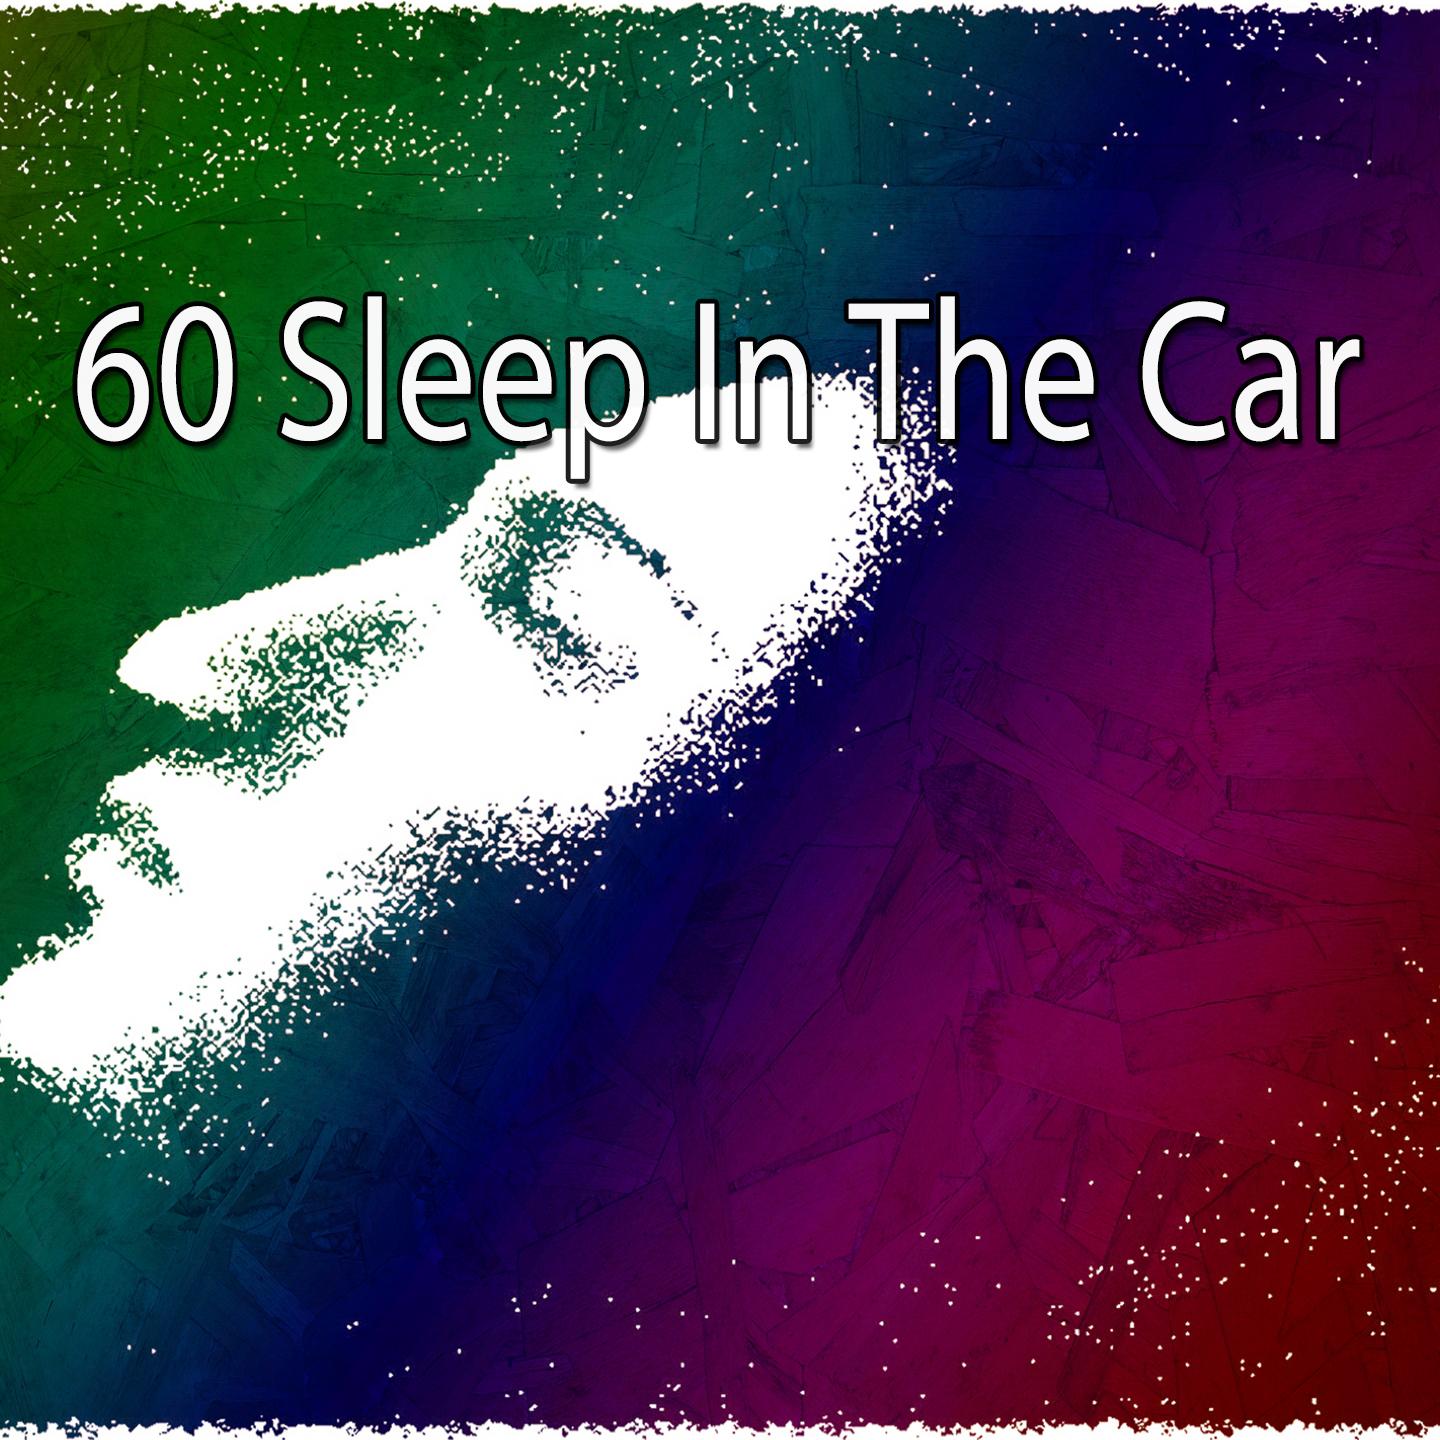 60 Sleep in the Car